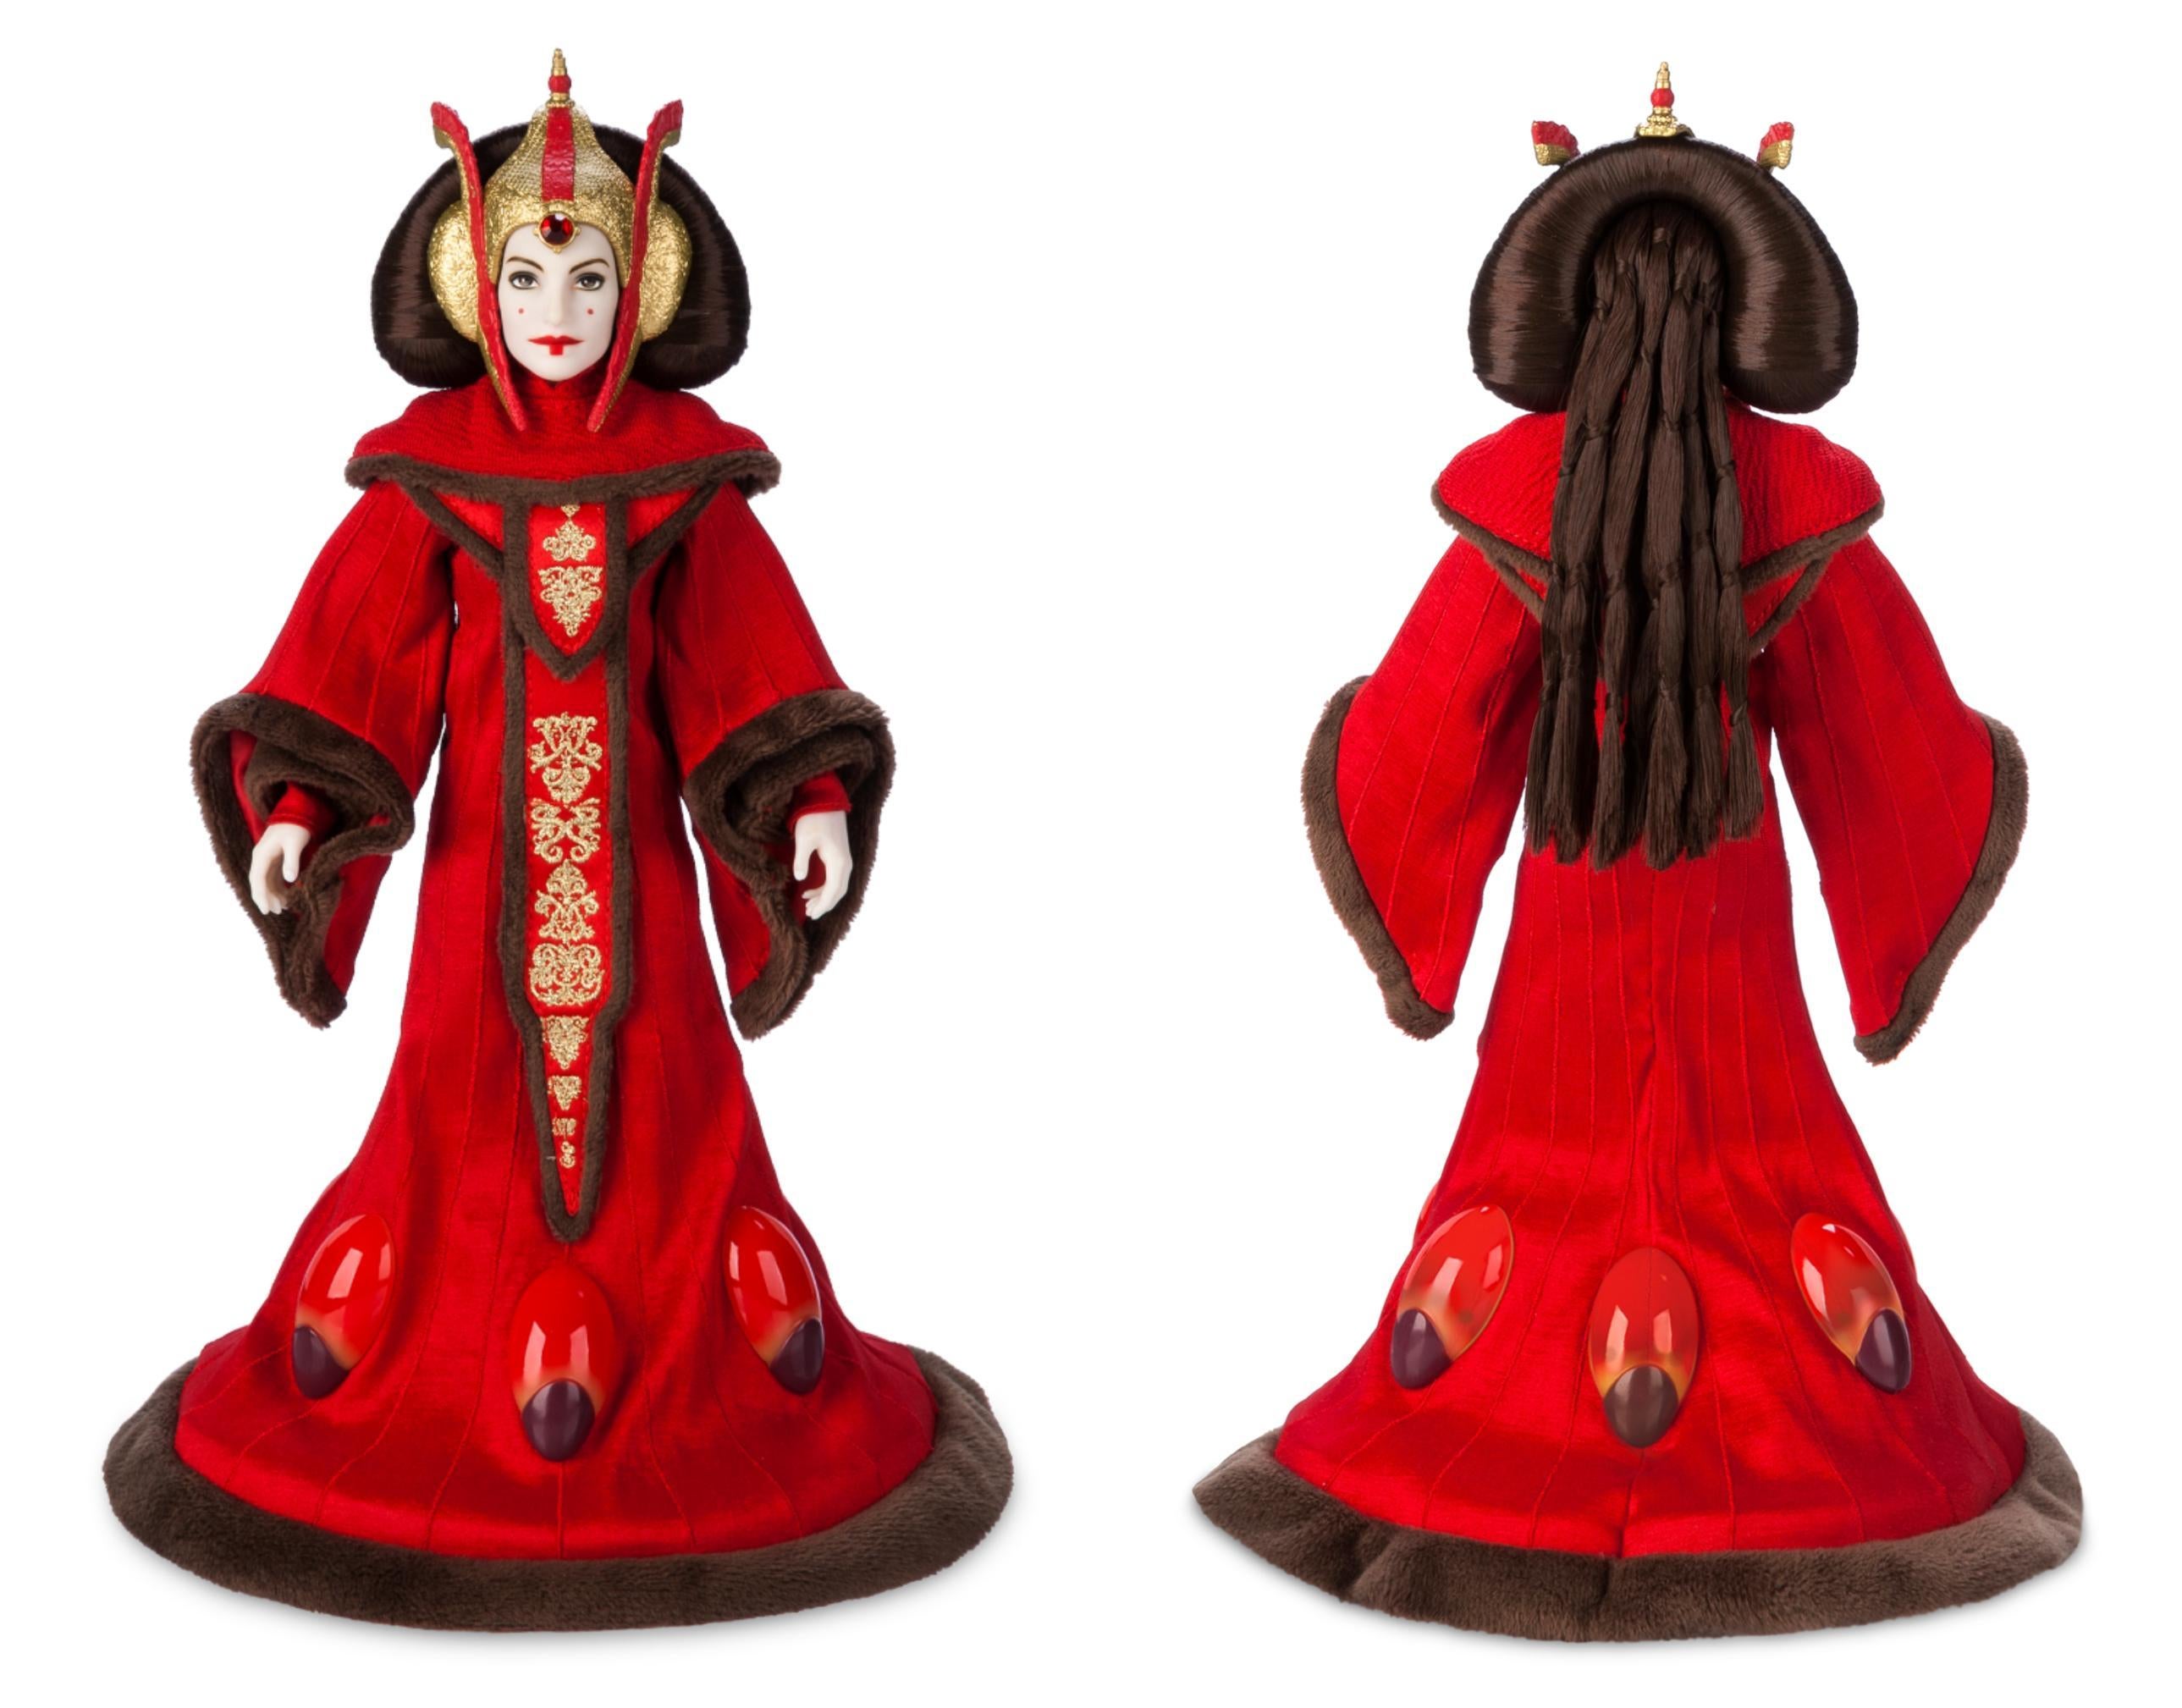 Супер ограниченная серия куклы Королевы Амидалы ко Дню Звездных войн все еще доступна